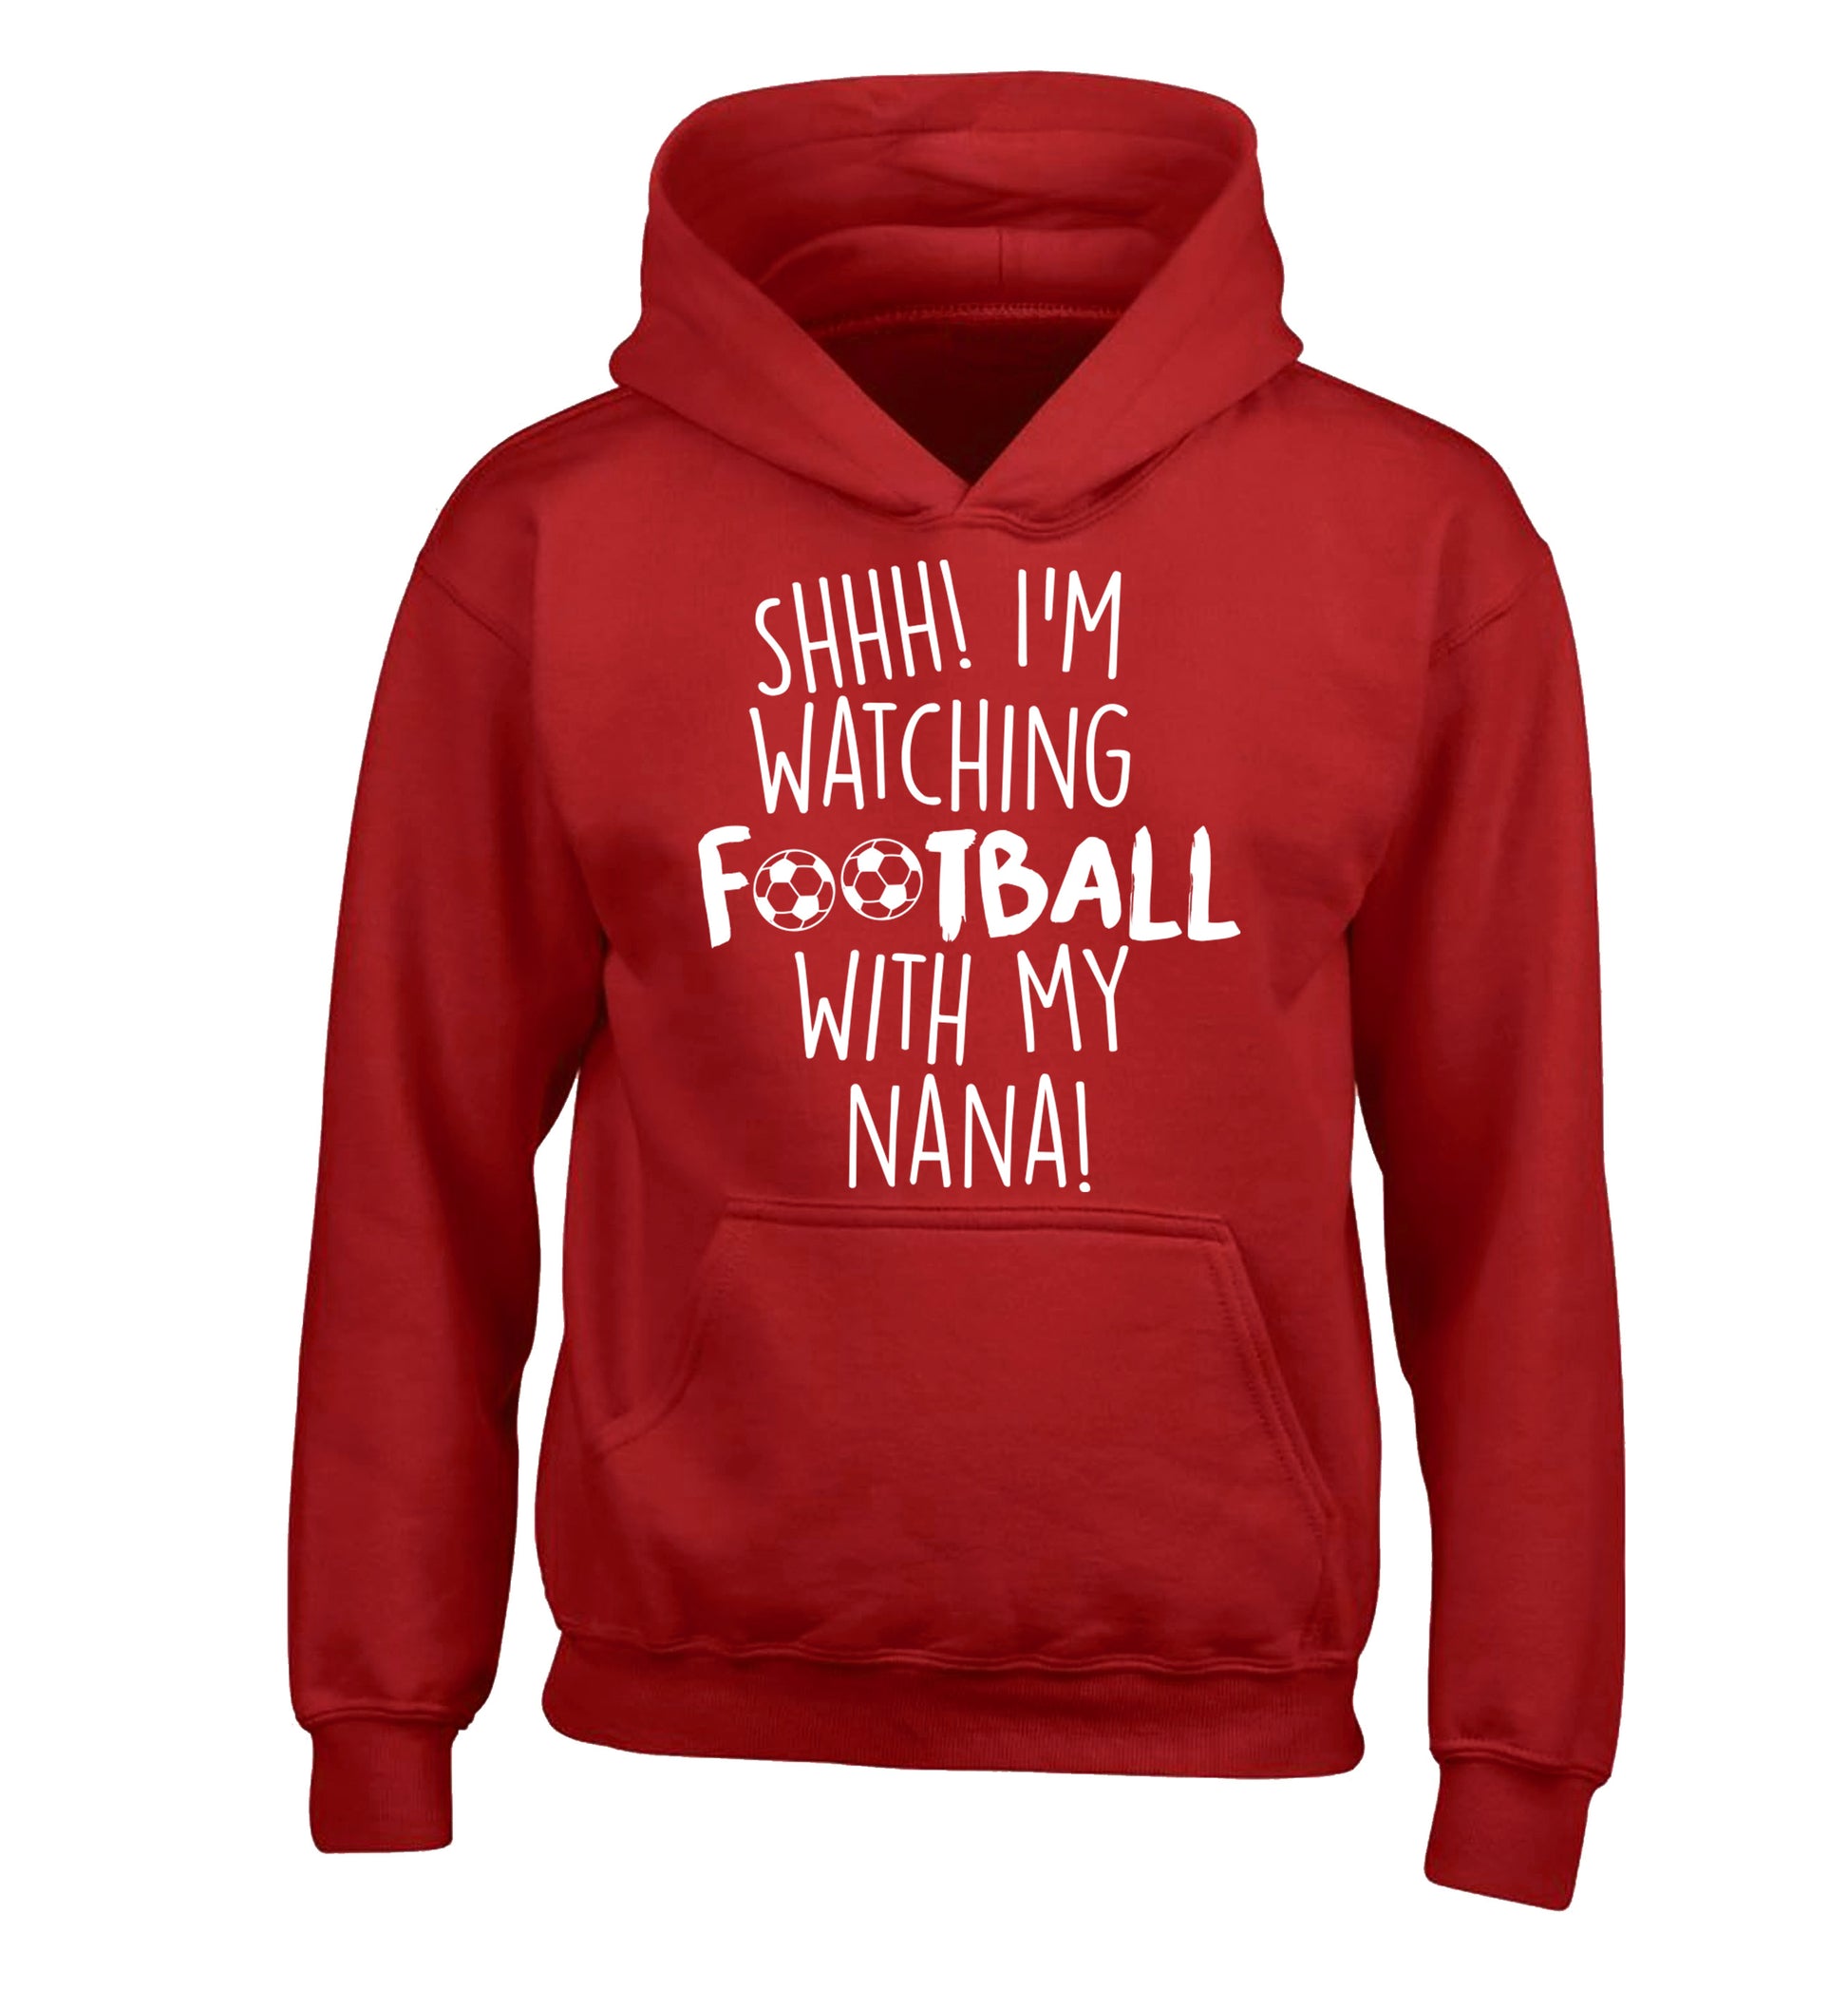 Shhh I'm watching football with my nana children's red hoodie 12-14 Years